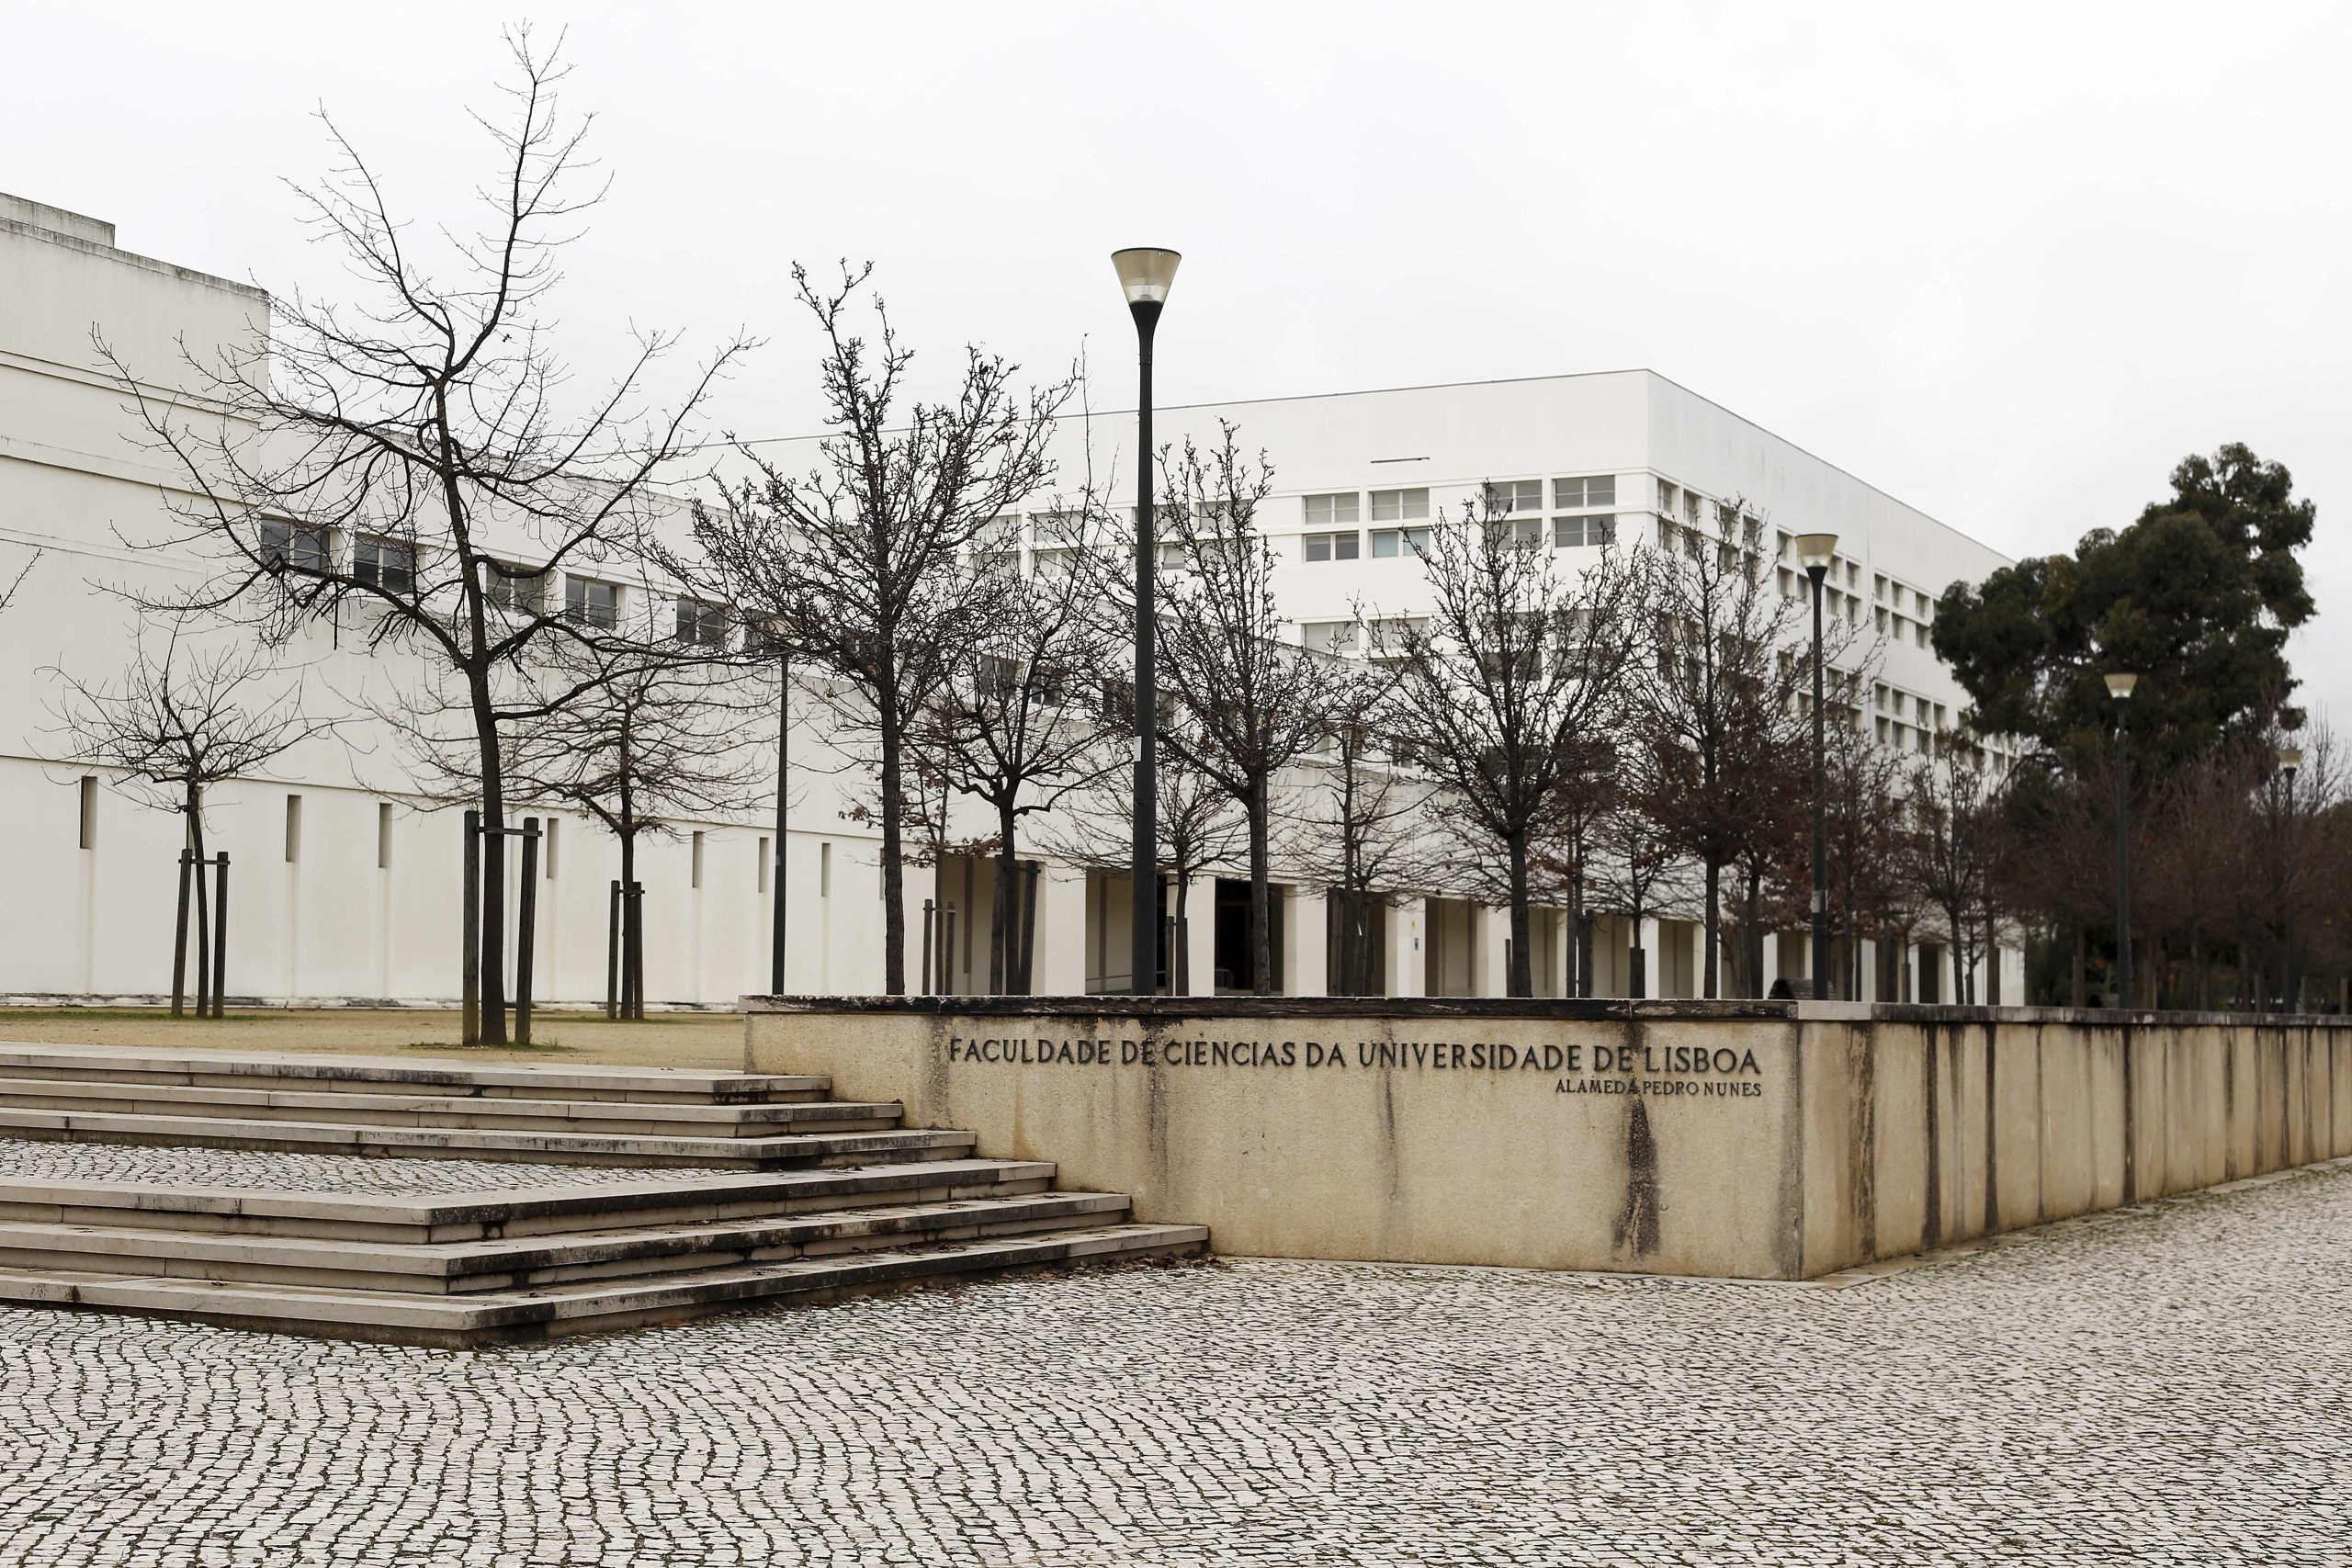 Derrame de substância perigosa obriga a evacuação de edifício da Faculdade de Ciências da Universidade de Lisboa